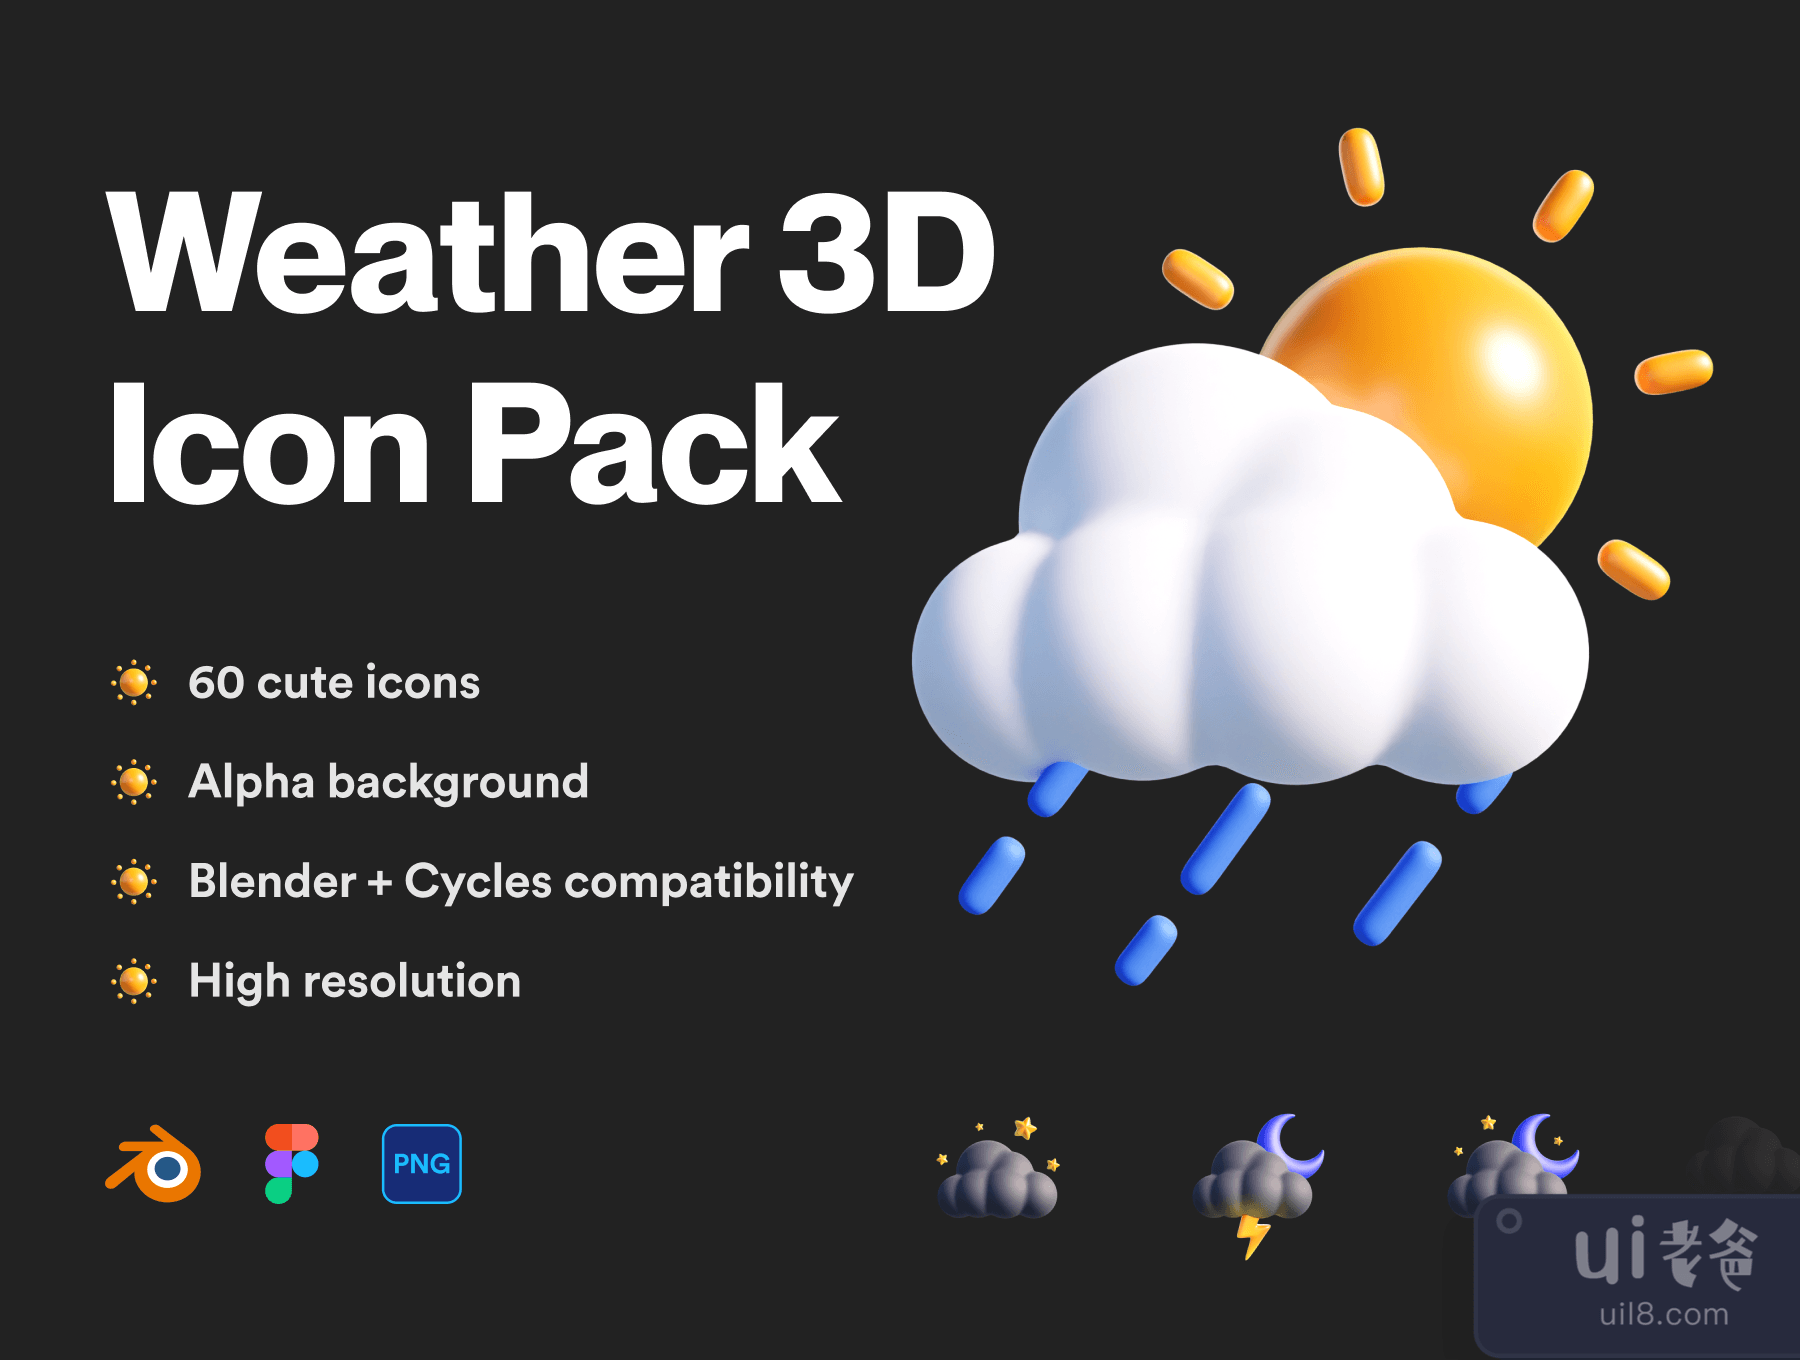 天气3D图标包(Weather 3D Icon Pack)插图